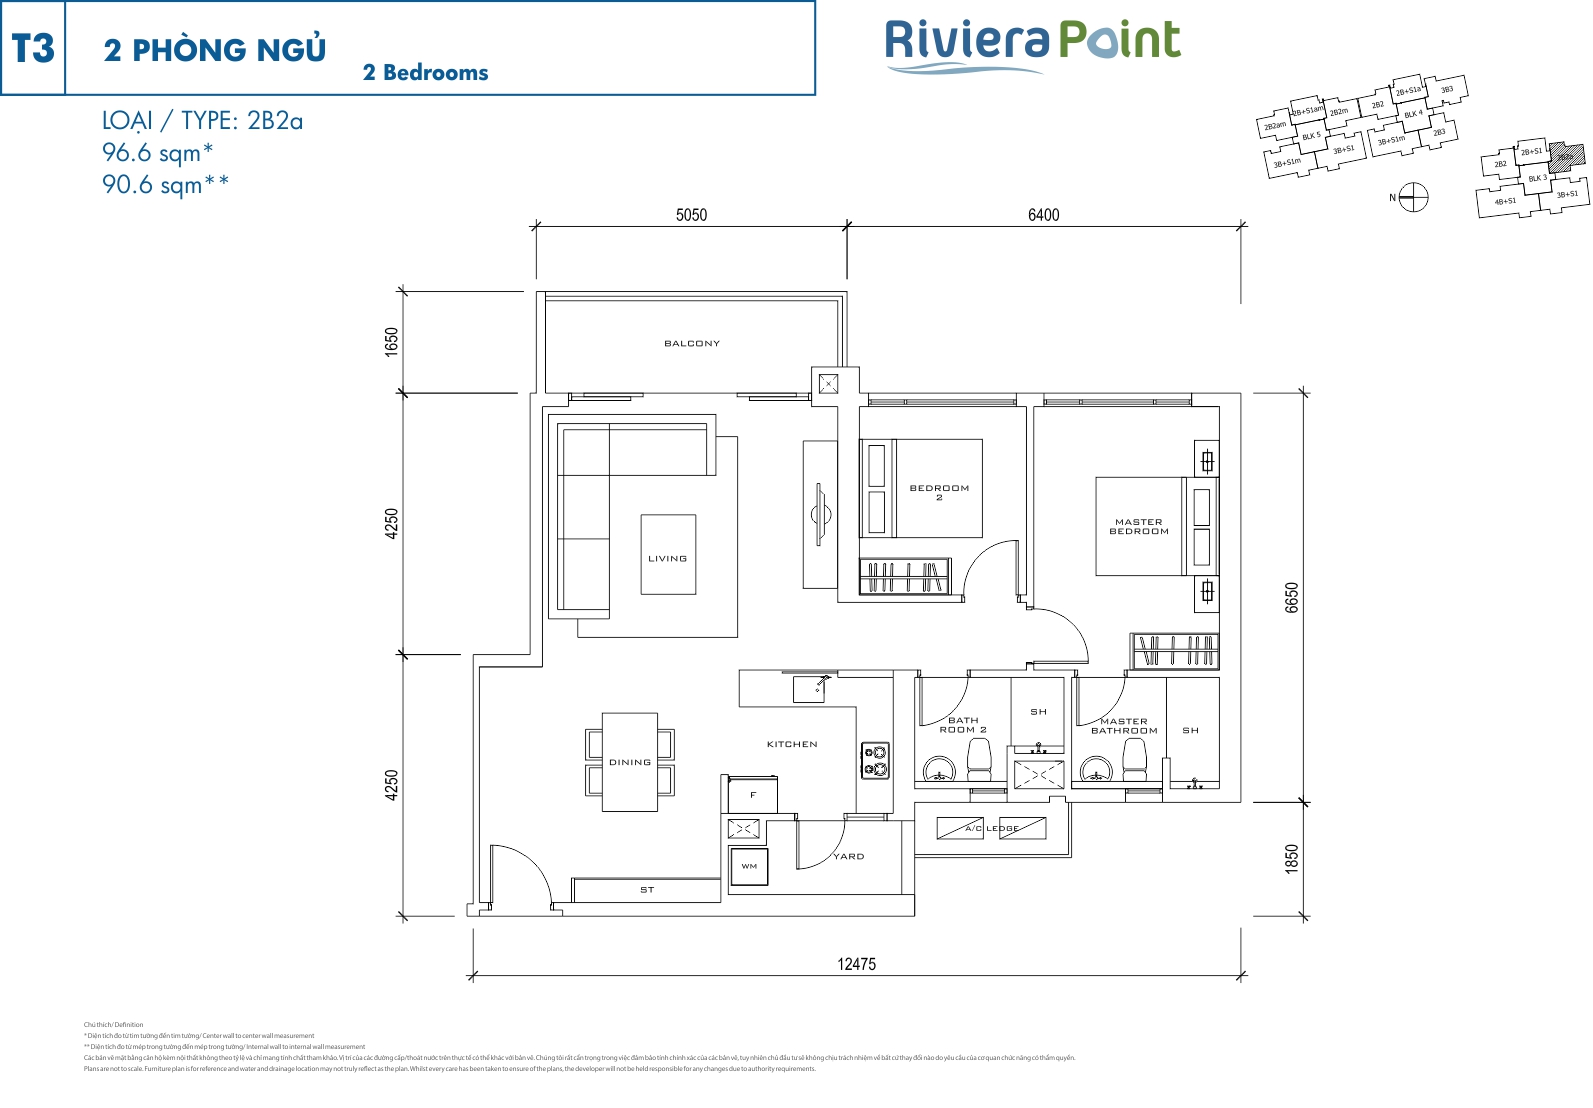 Mặt bằng căn hộ Riviera Point quận 7 layout căn 2 phòng ngủ loại 96.6m2 - T3 2PN - 2B2a